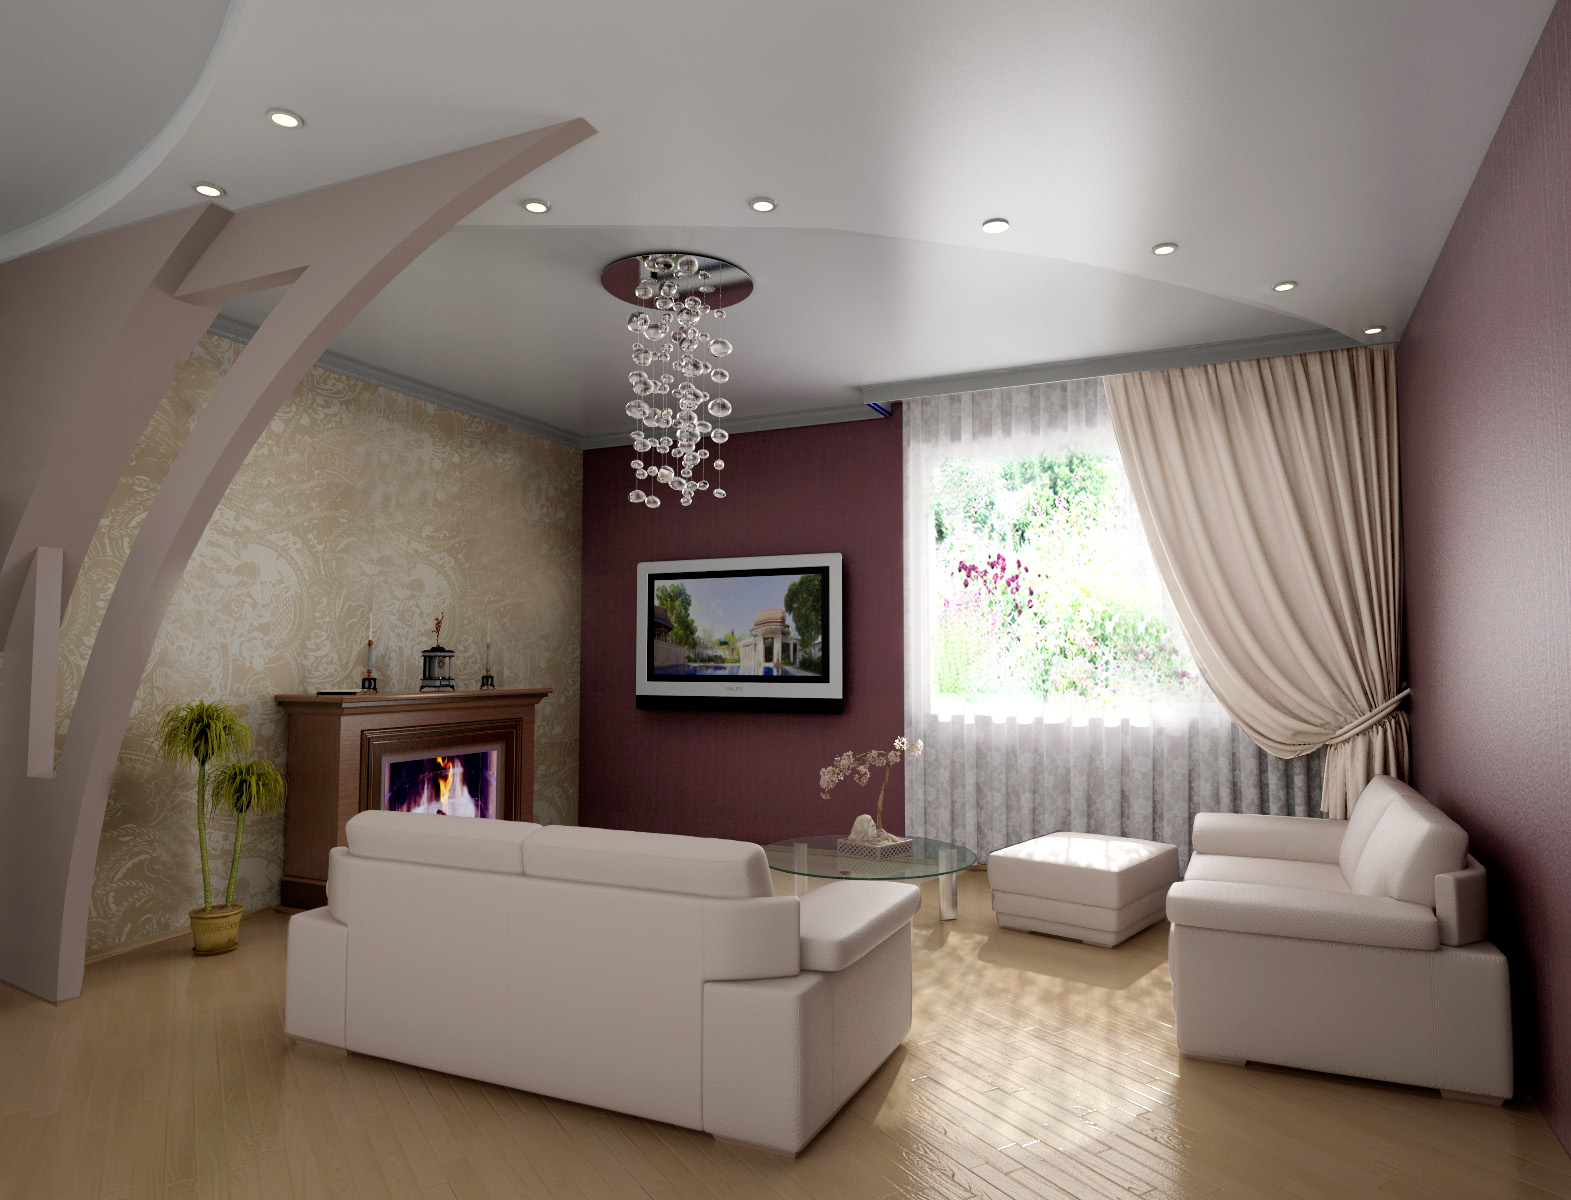 Дизайн потолка из гипсокартона зал фото: Потолки из гипсокартона (80 фото) – Дизайн потолков для разных комнат